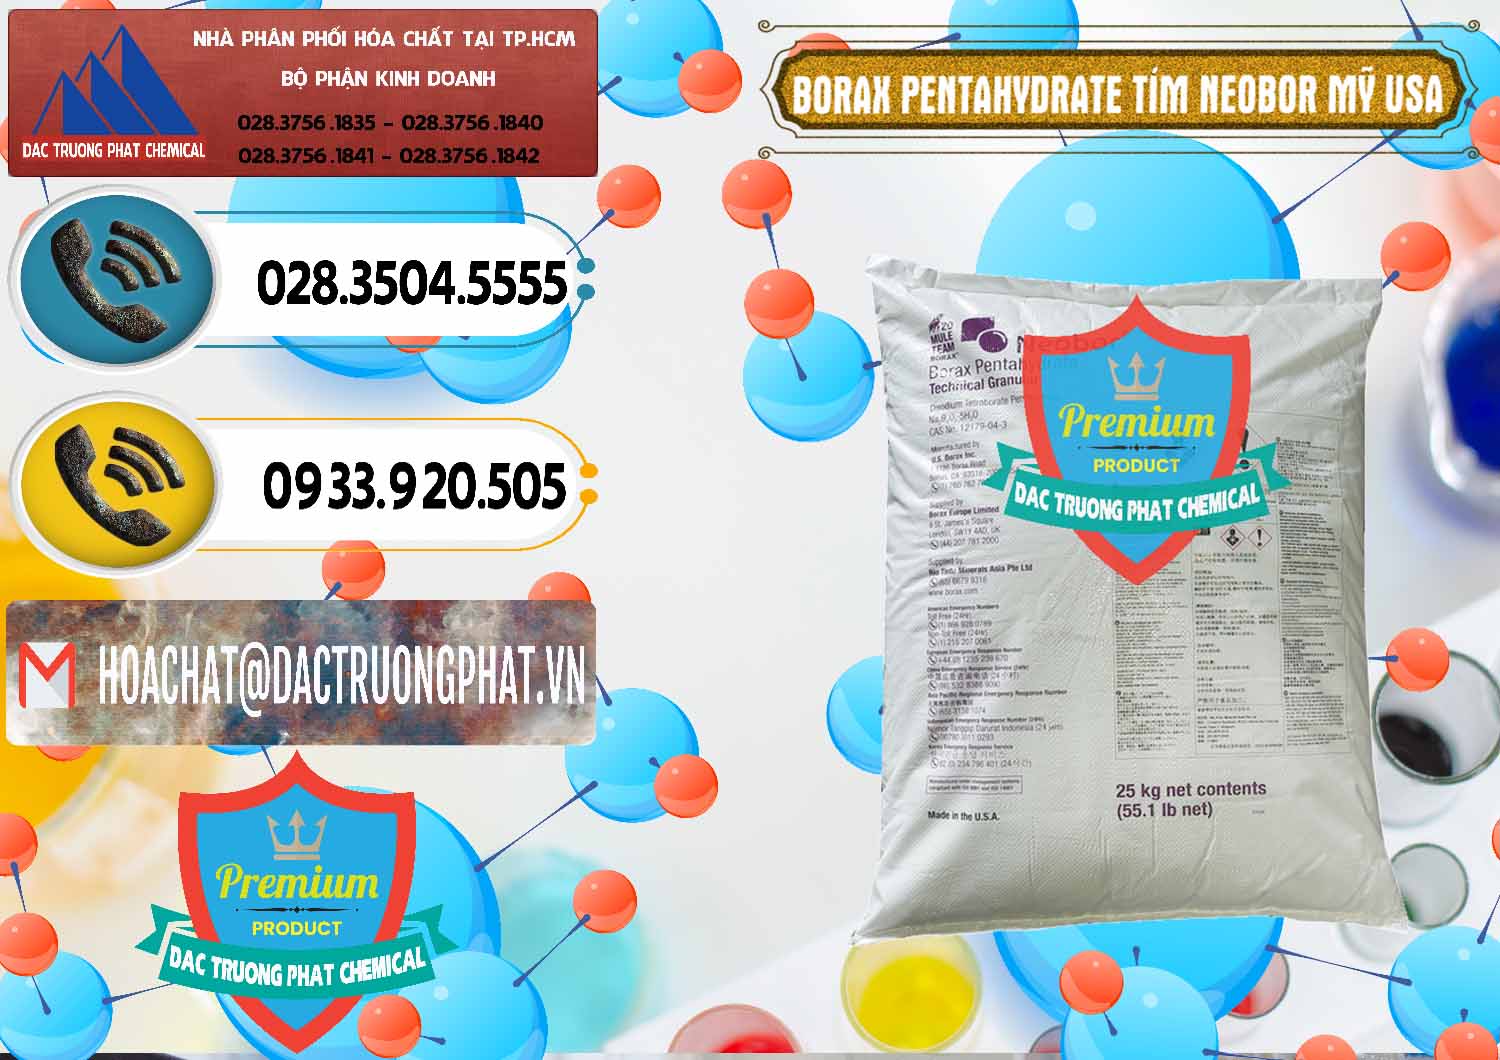 Cung cấp ( bán ) Borax Pentahydrate Bao Tím Neobor TG Mỹ Usa - 0277 - Phân phối & cung cấp hóa chất tại TP.HCM - hoachatdetnhuom.vn